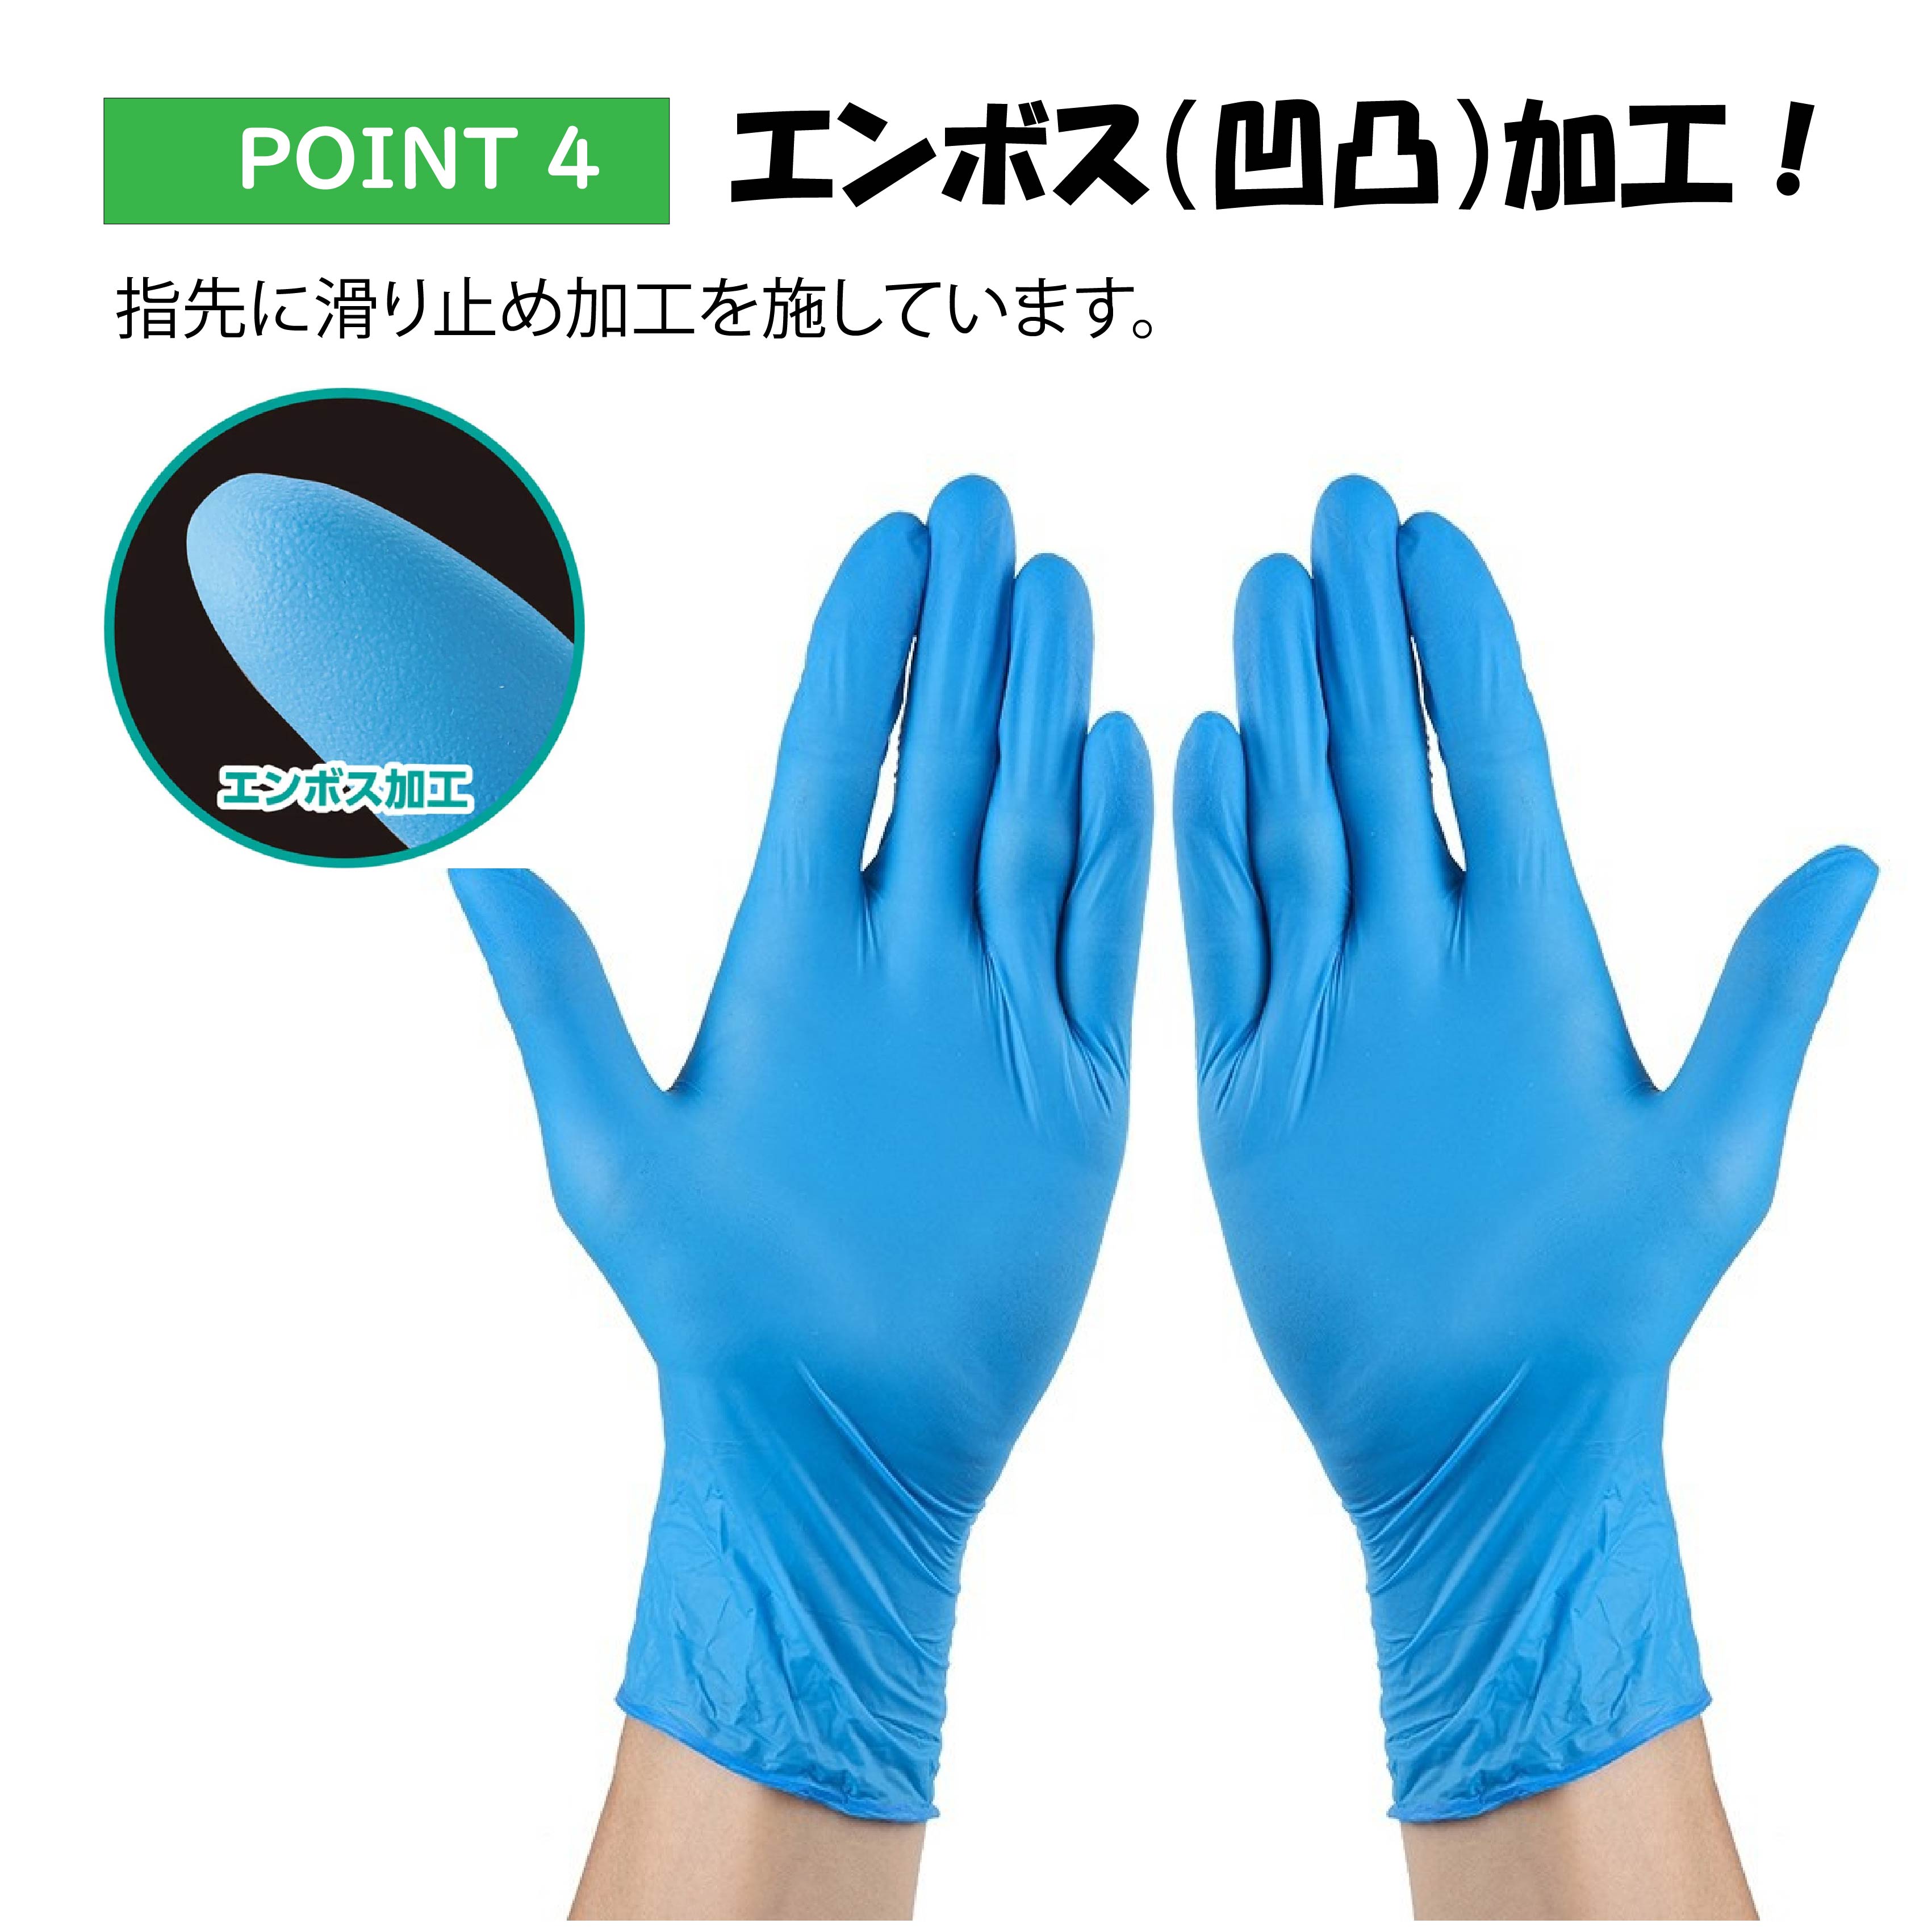 ☆最安値挑戦☆ニトリル手袋 ニトリルグローブ ニトリルゴム手袋